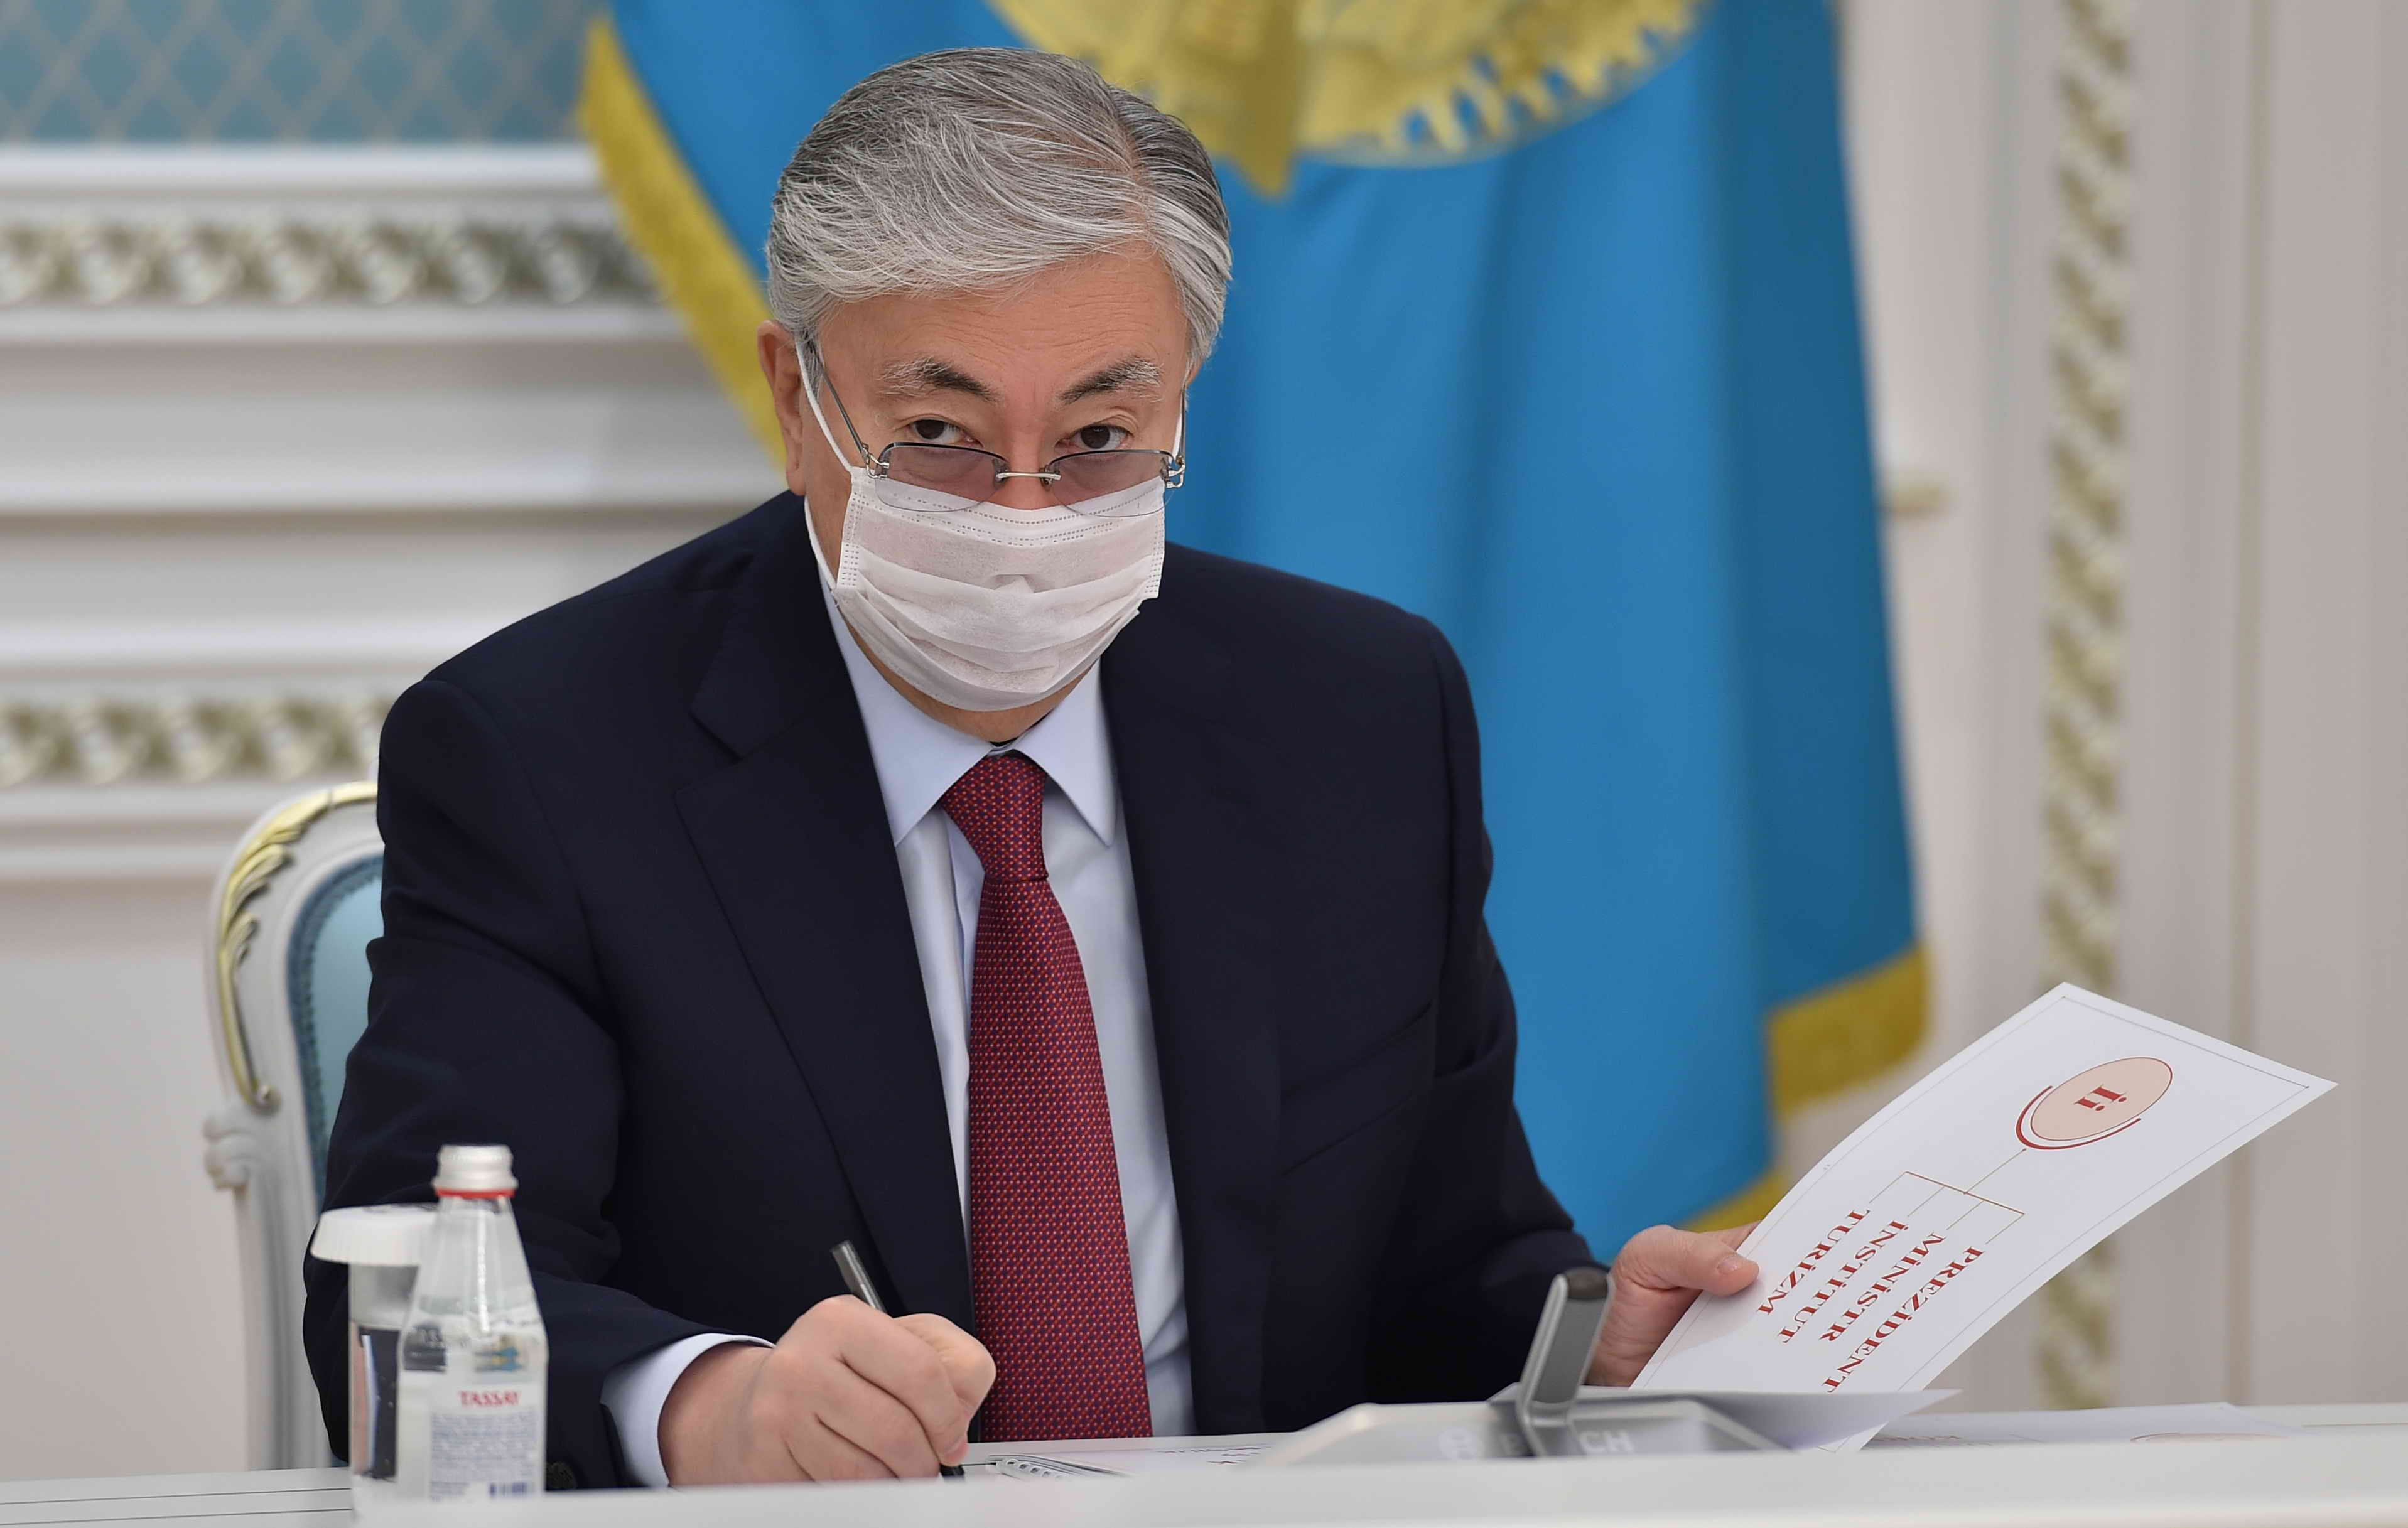 Глава государства провел совещание по переводу казахского алфавита на латинскую графику